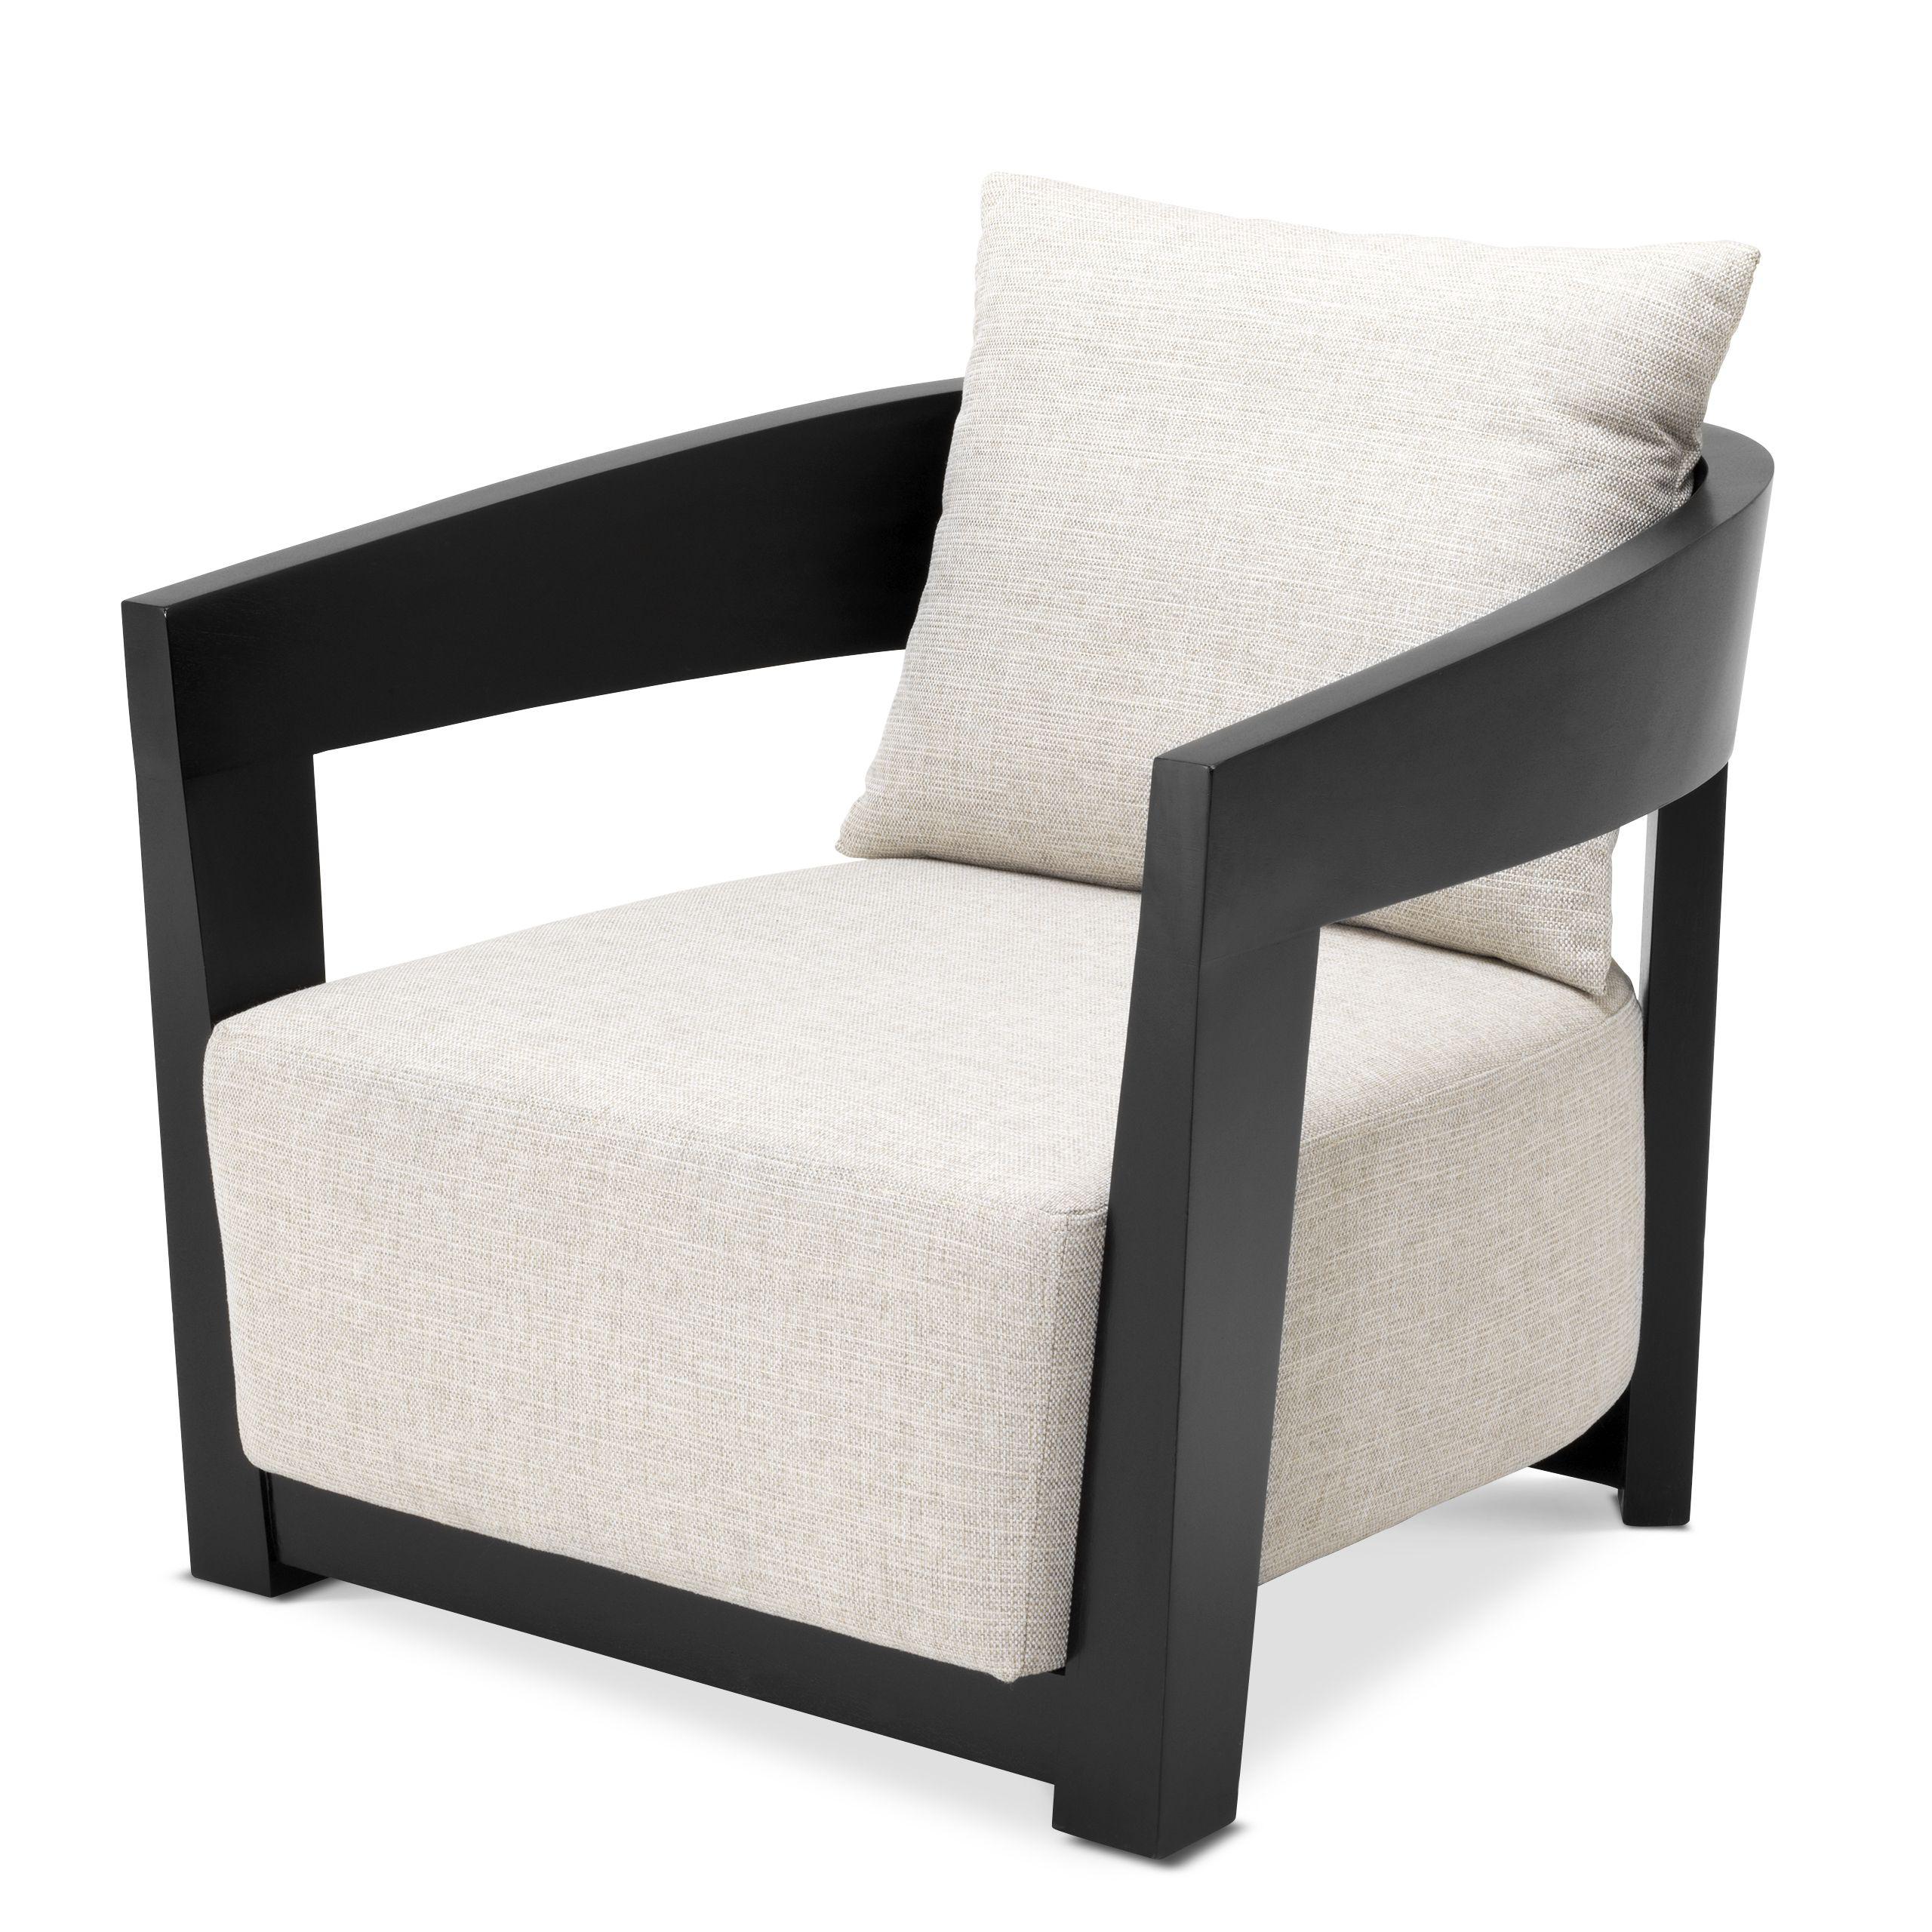 Купить Кресло Chair Rubautelli в интернет-магазине roooms.ru